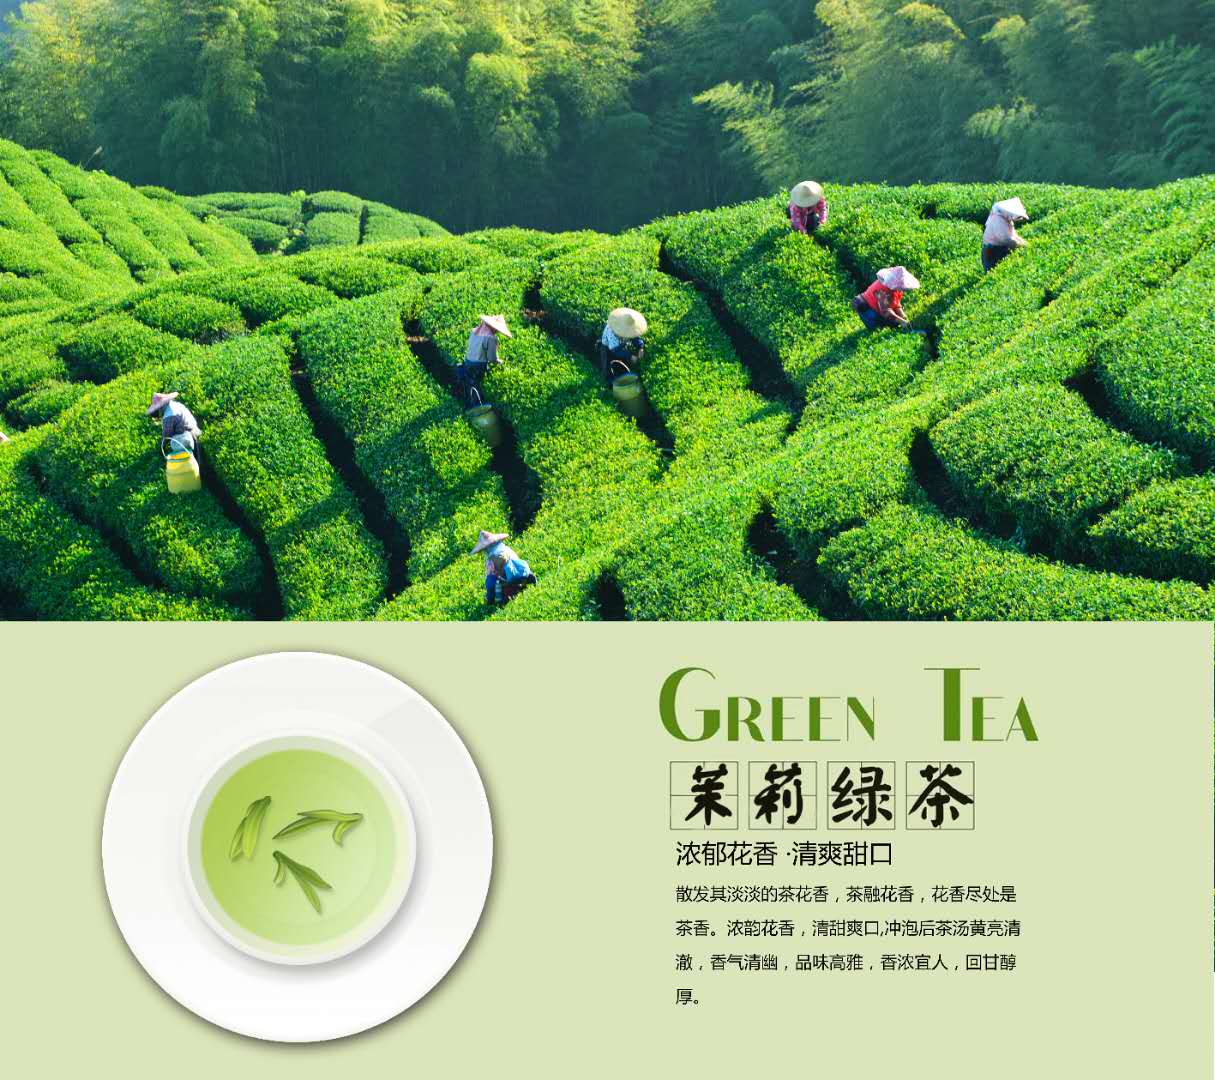 廣州桔邦茶葉有限公司